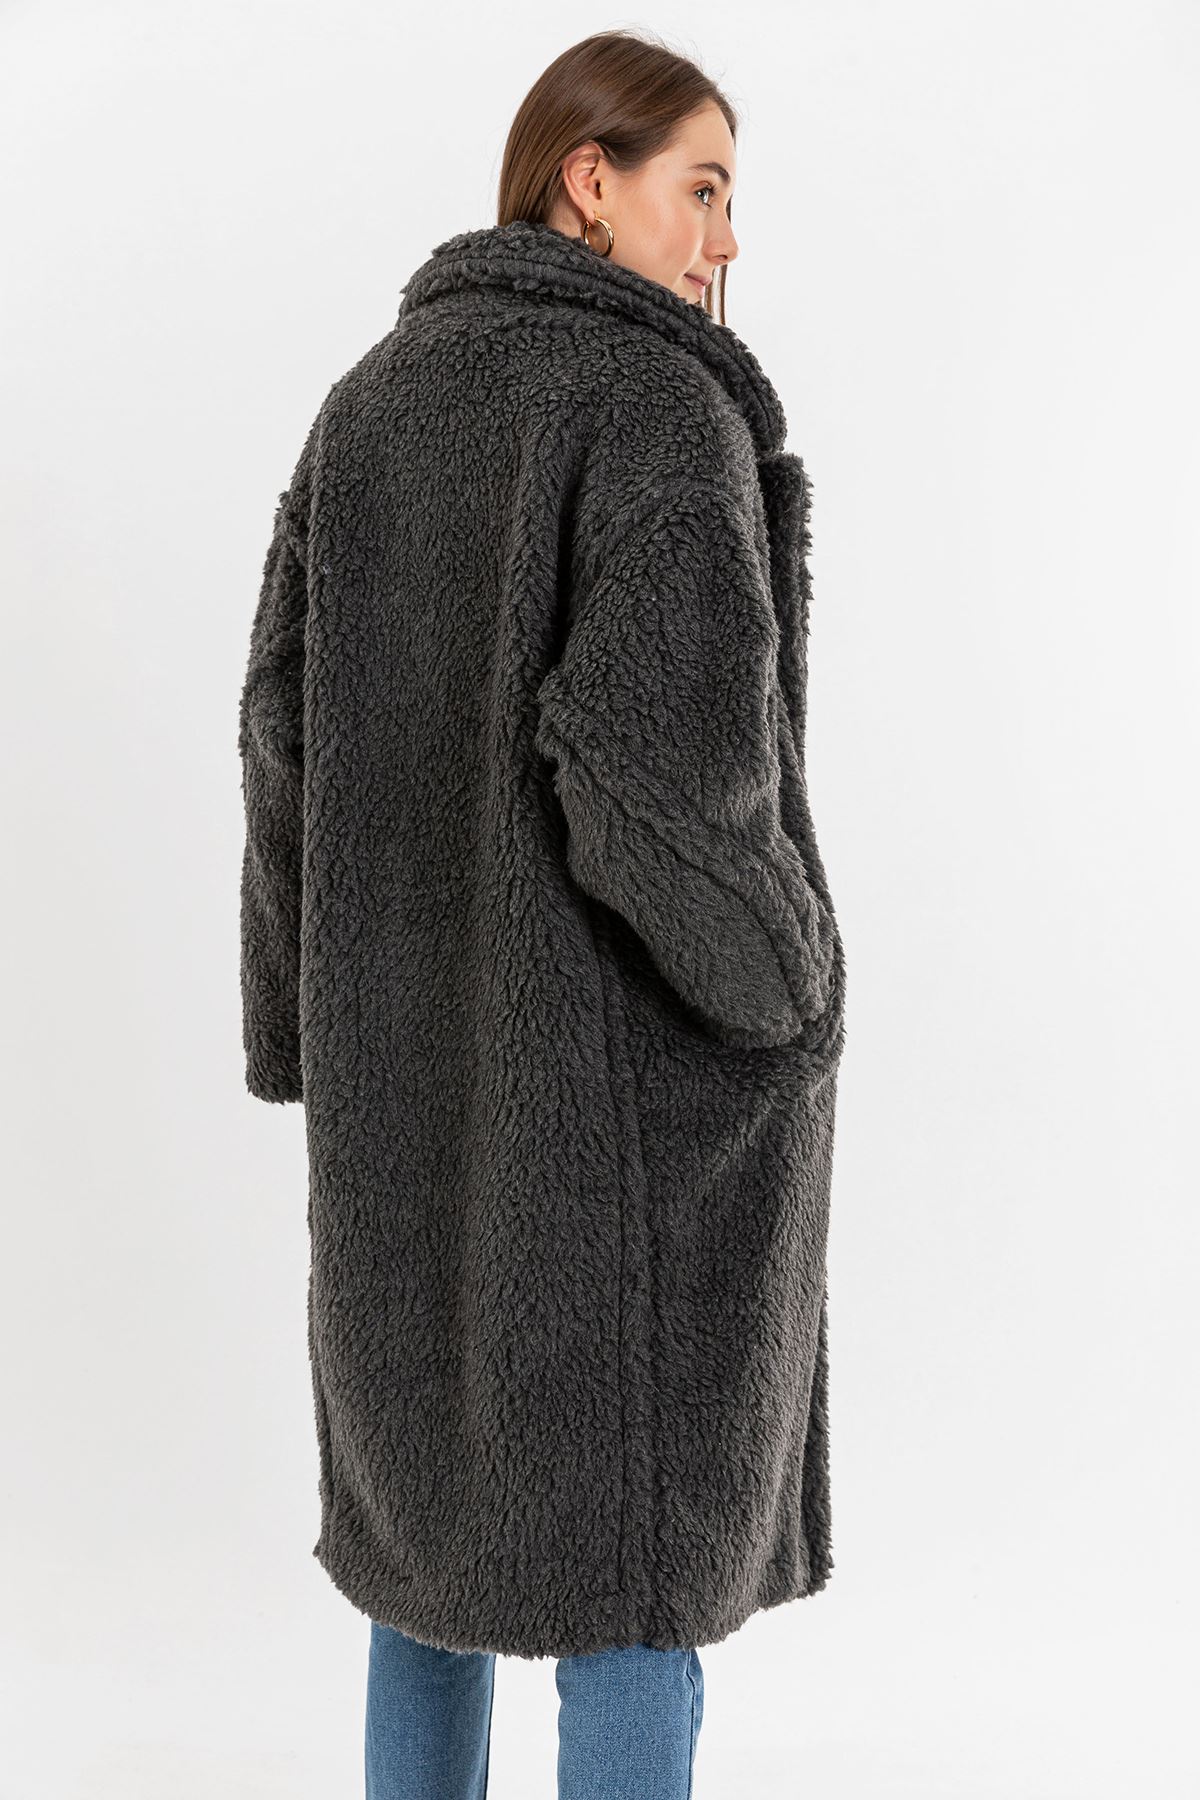 Teddy Kumaş Ceket Yaka Diz Altı Boy Oversize/Salaş Kadın Kaban-Antrasit